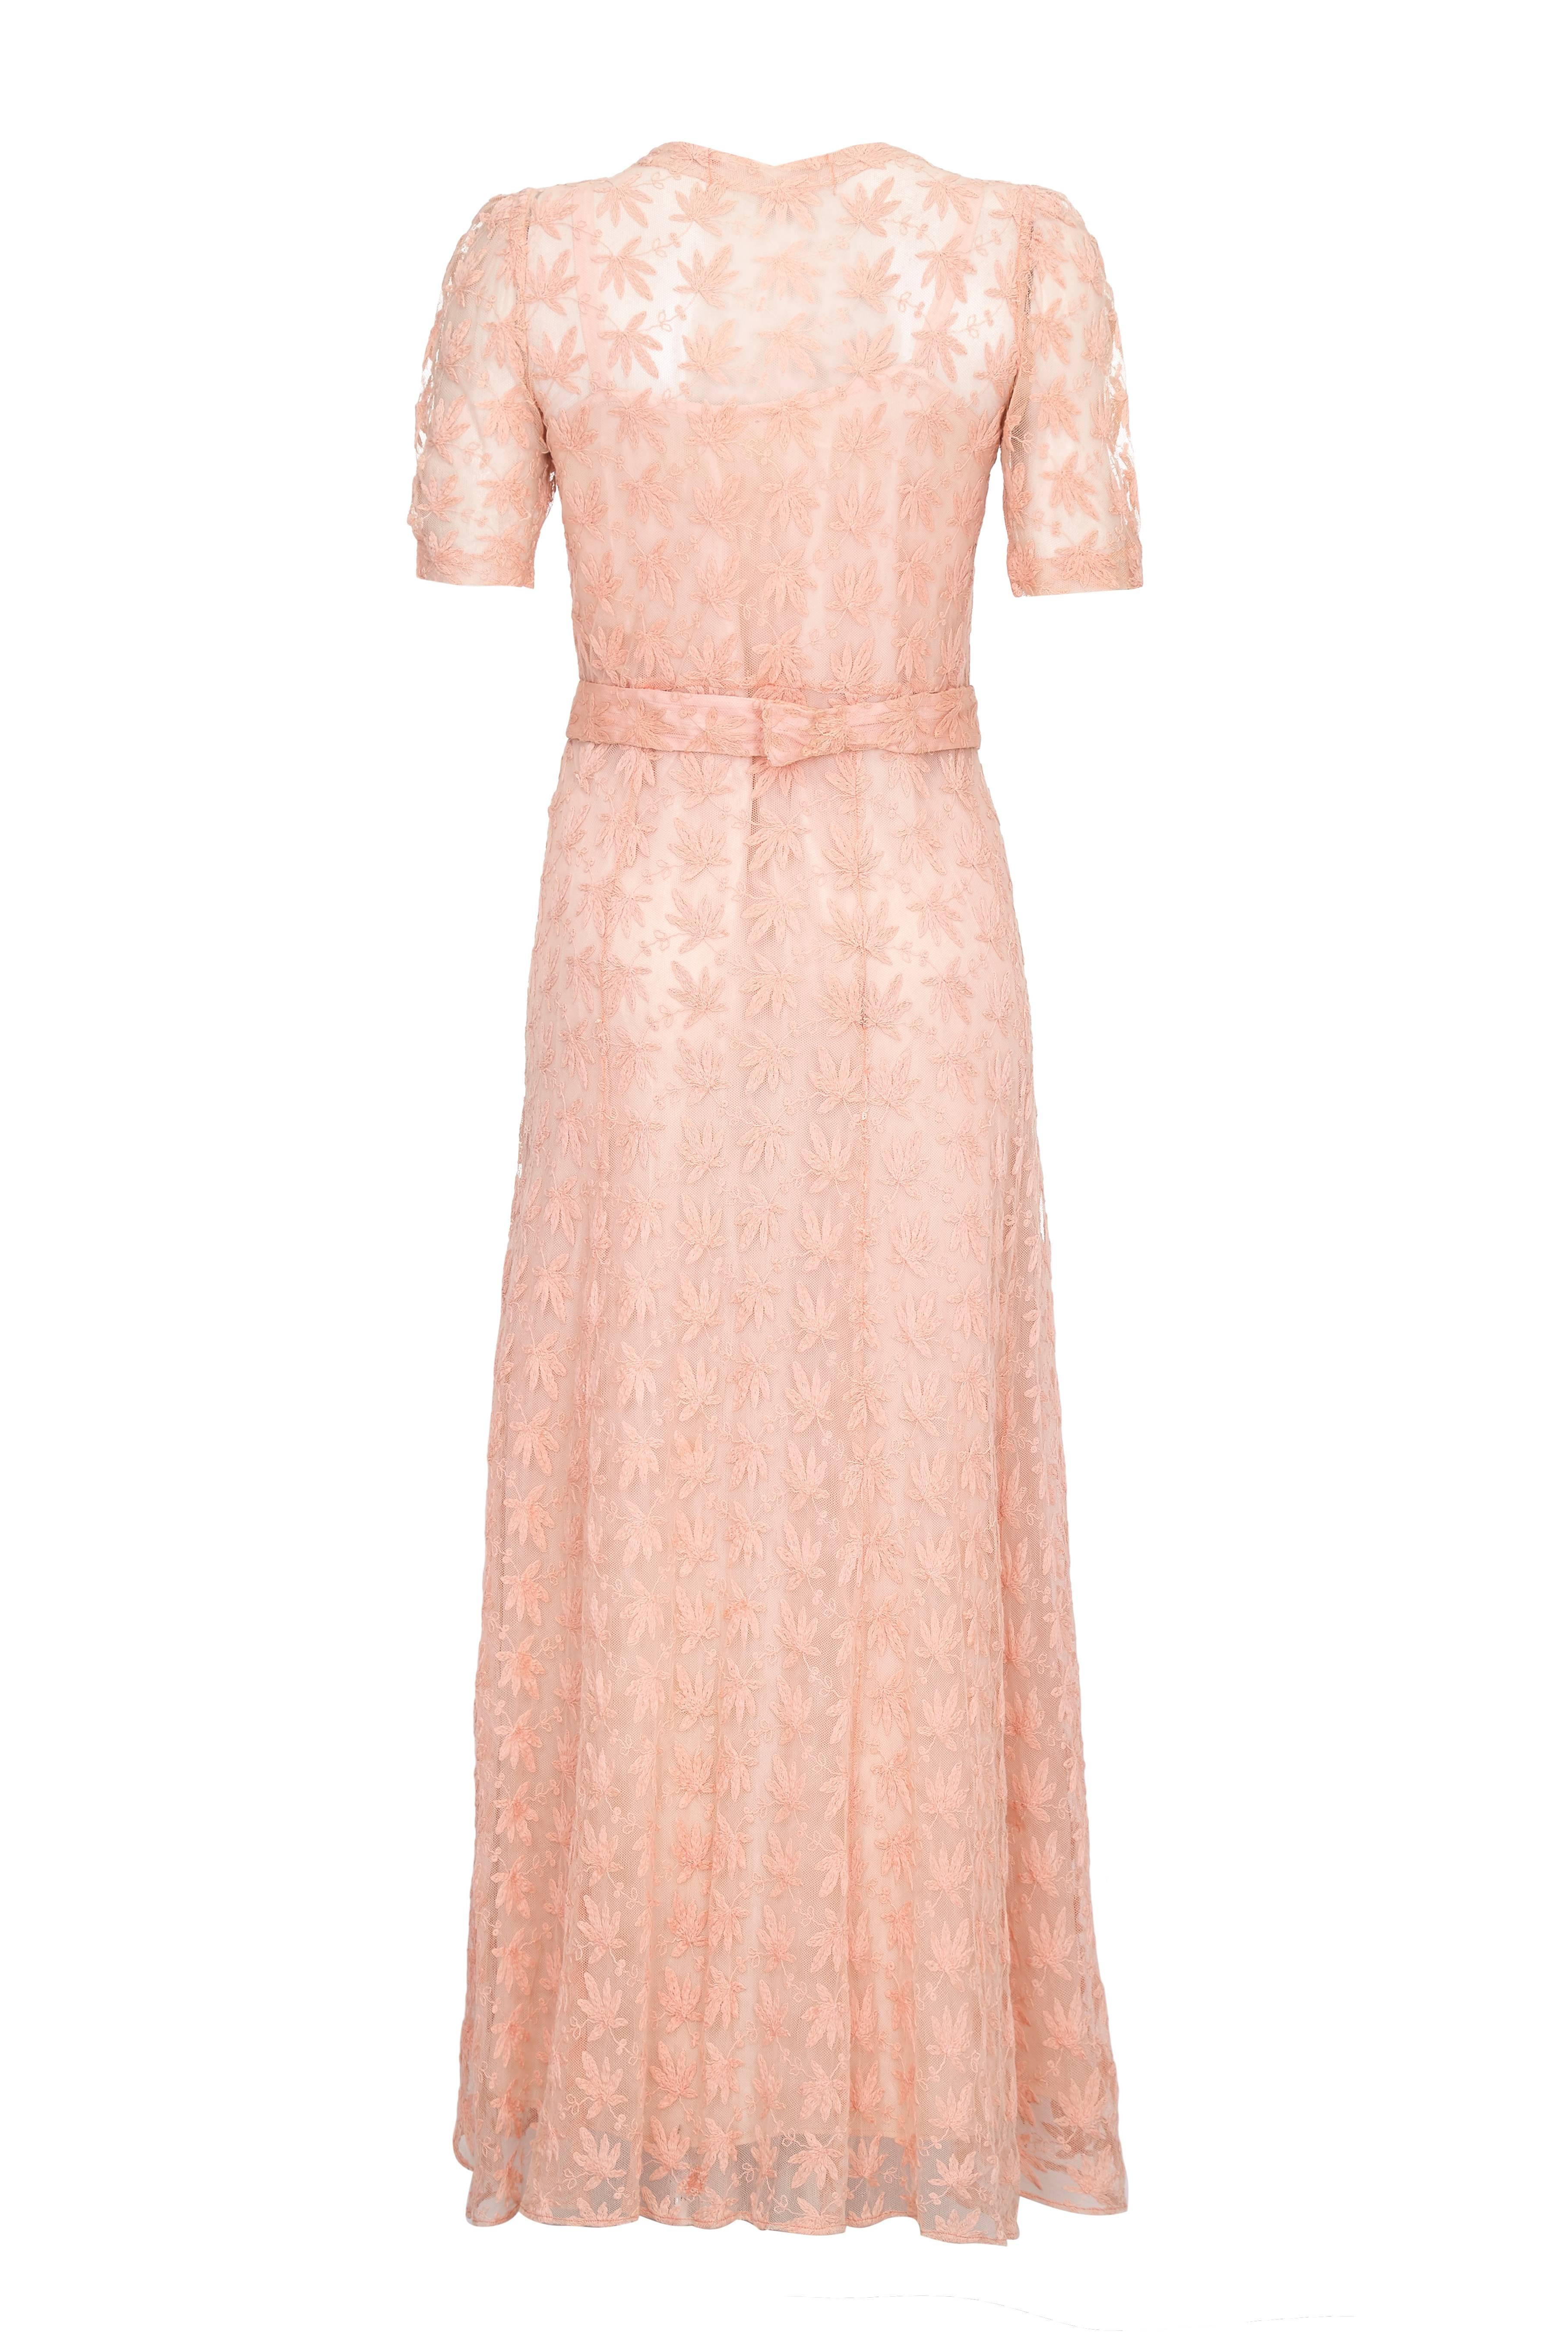 Dieses bezaubernde Vintage-Kleid aus den 1930er Jahren aus blassrosa durchscheinendem Netz mit zarter Blattstickerei wird mit einem passenden Gürtel geliefert, der auf der Rückseite mit Haken und Ösen befestigt wird. Dieses wunderschöne Kleid mit